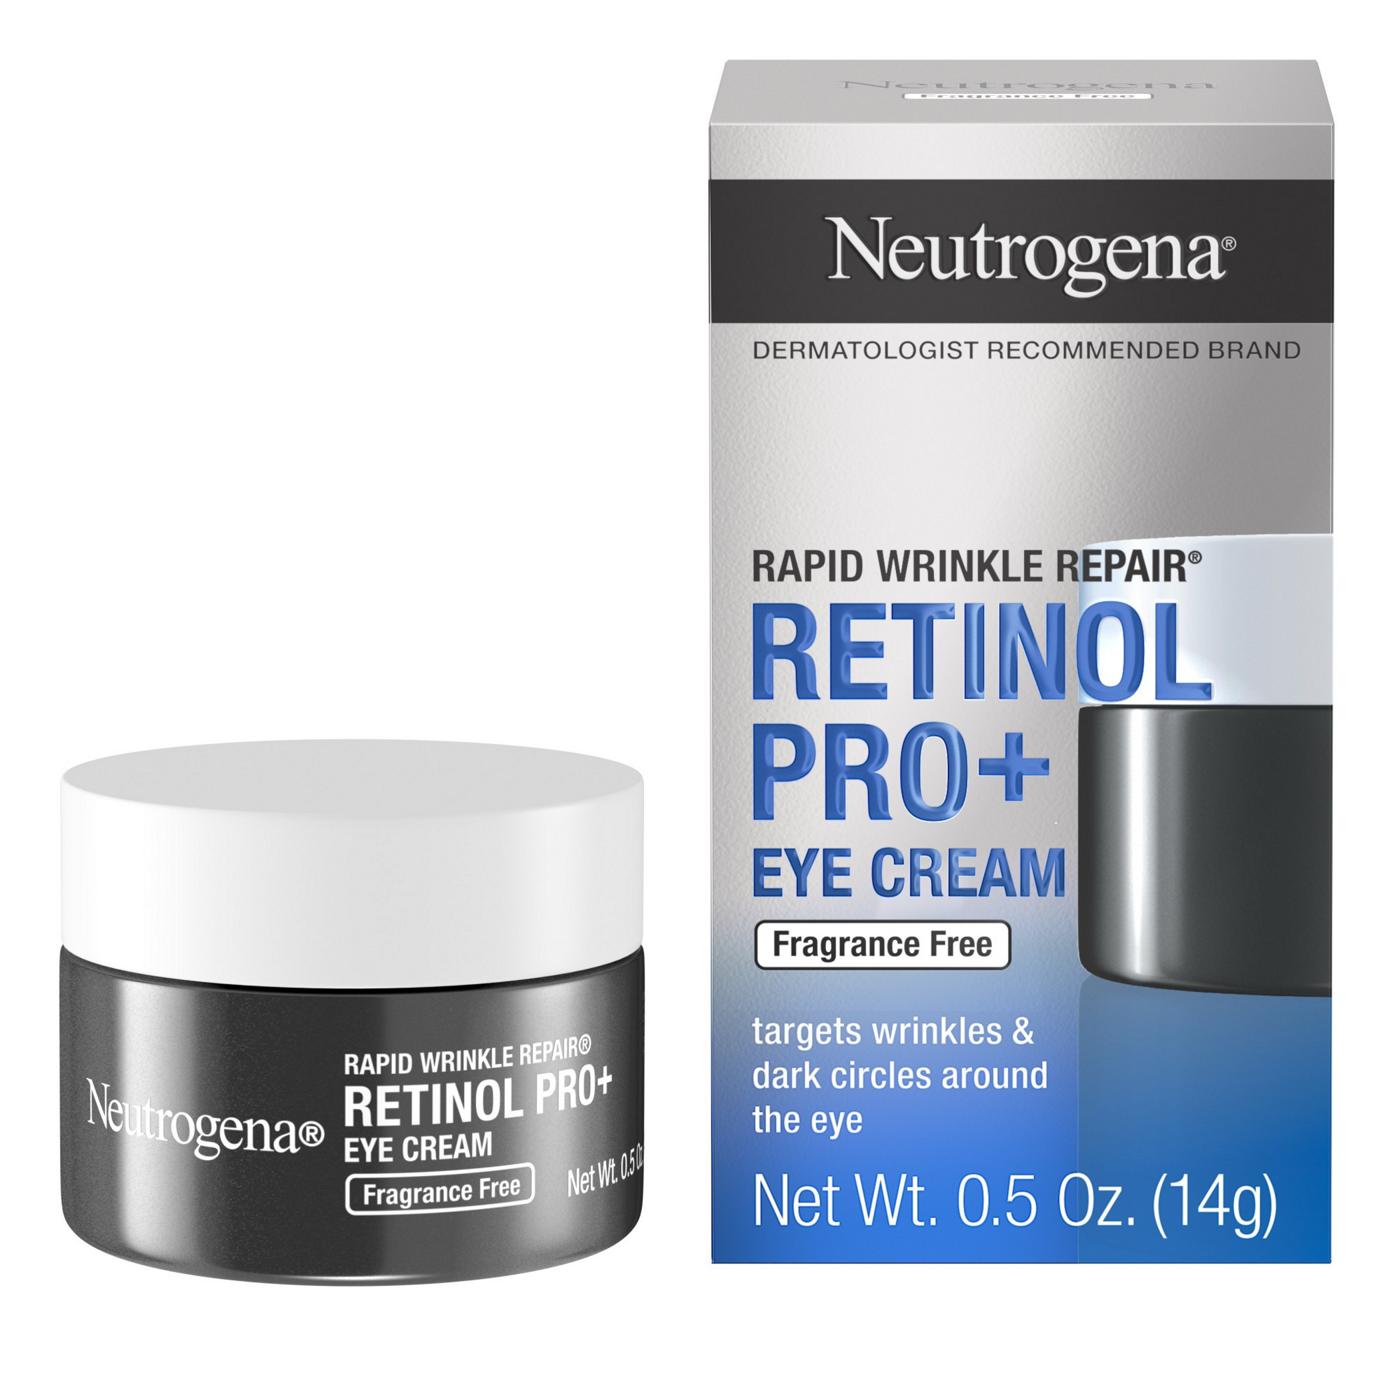 Neutrogena Rapid Wrinkle Repair Retinol Pro + Eye Cream; image 2 of 3